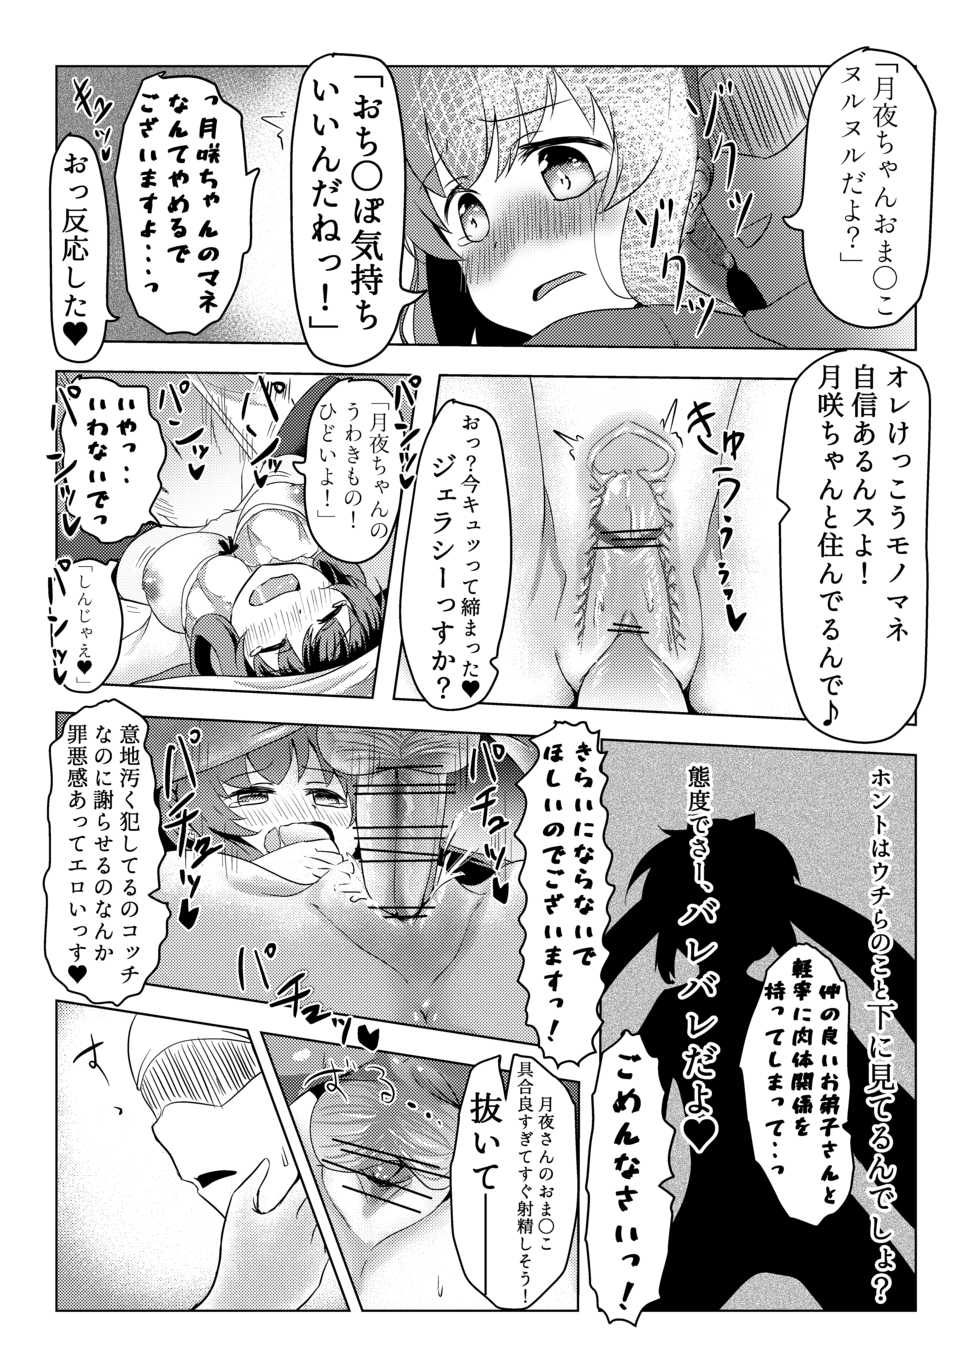 [Zayuu] Tsukuyo ga Waruinodegozaimasu  (Puella Magi Madoka Magica Side Story: Magia Record) - Page 14